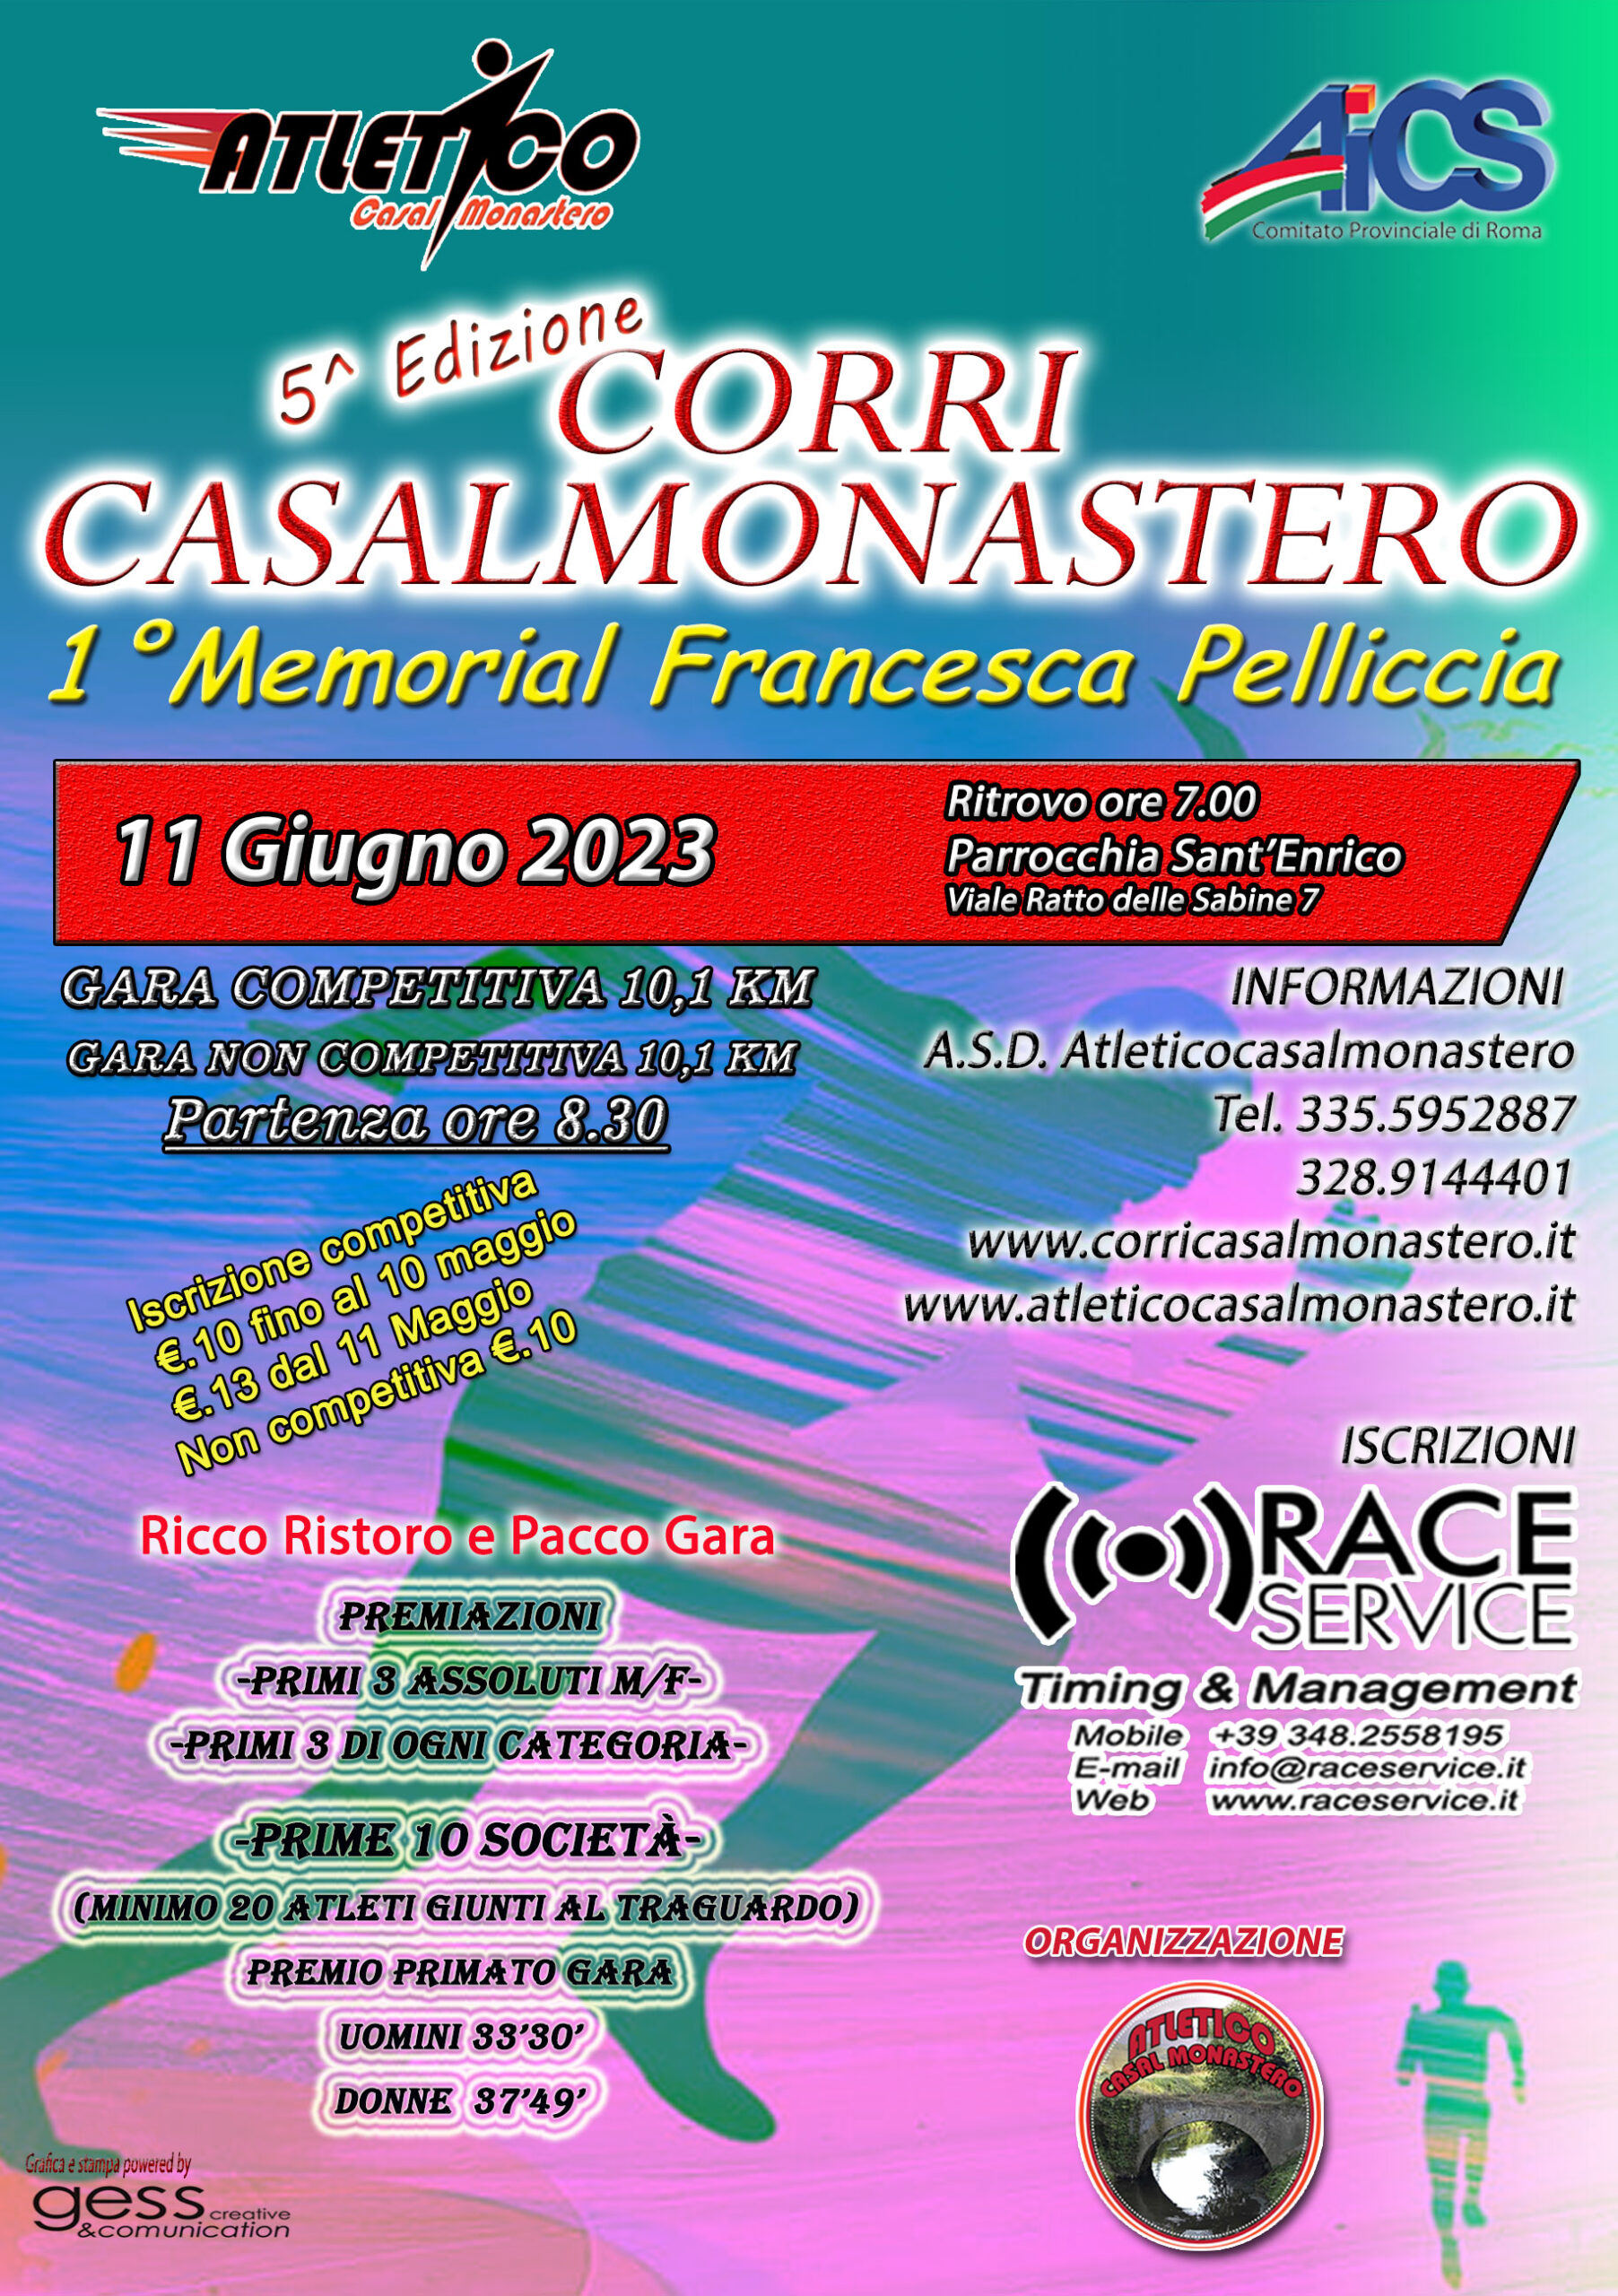 Featured image for “5^ CORRI CASAL MONASTERO”